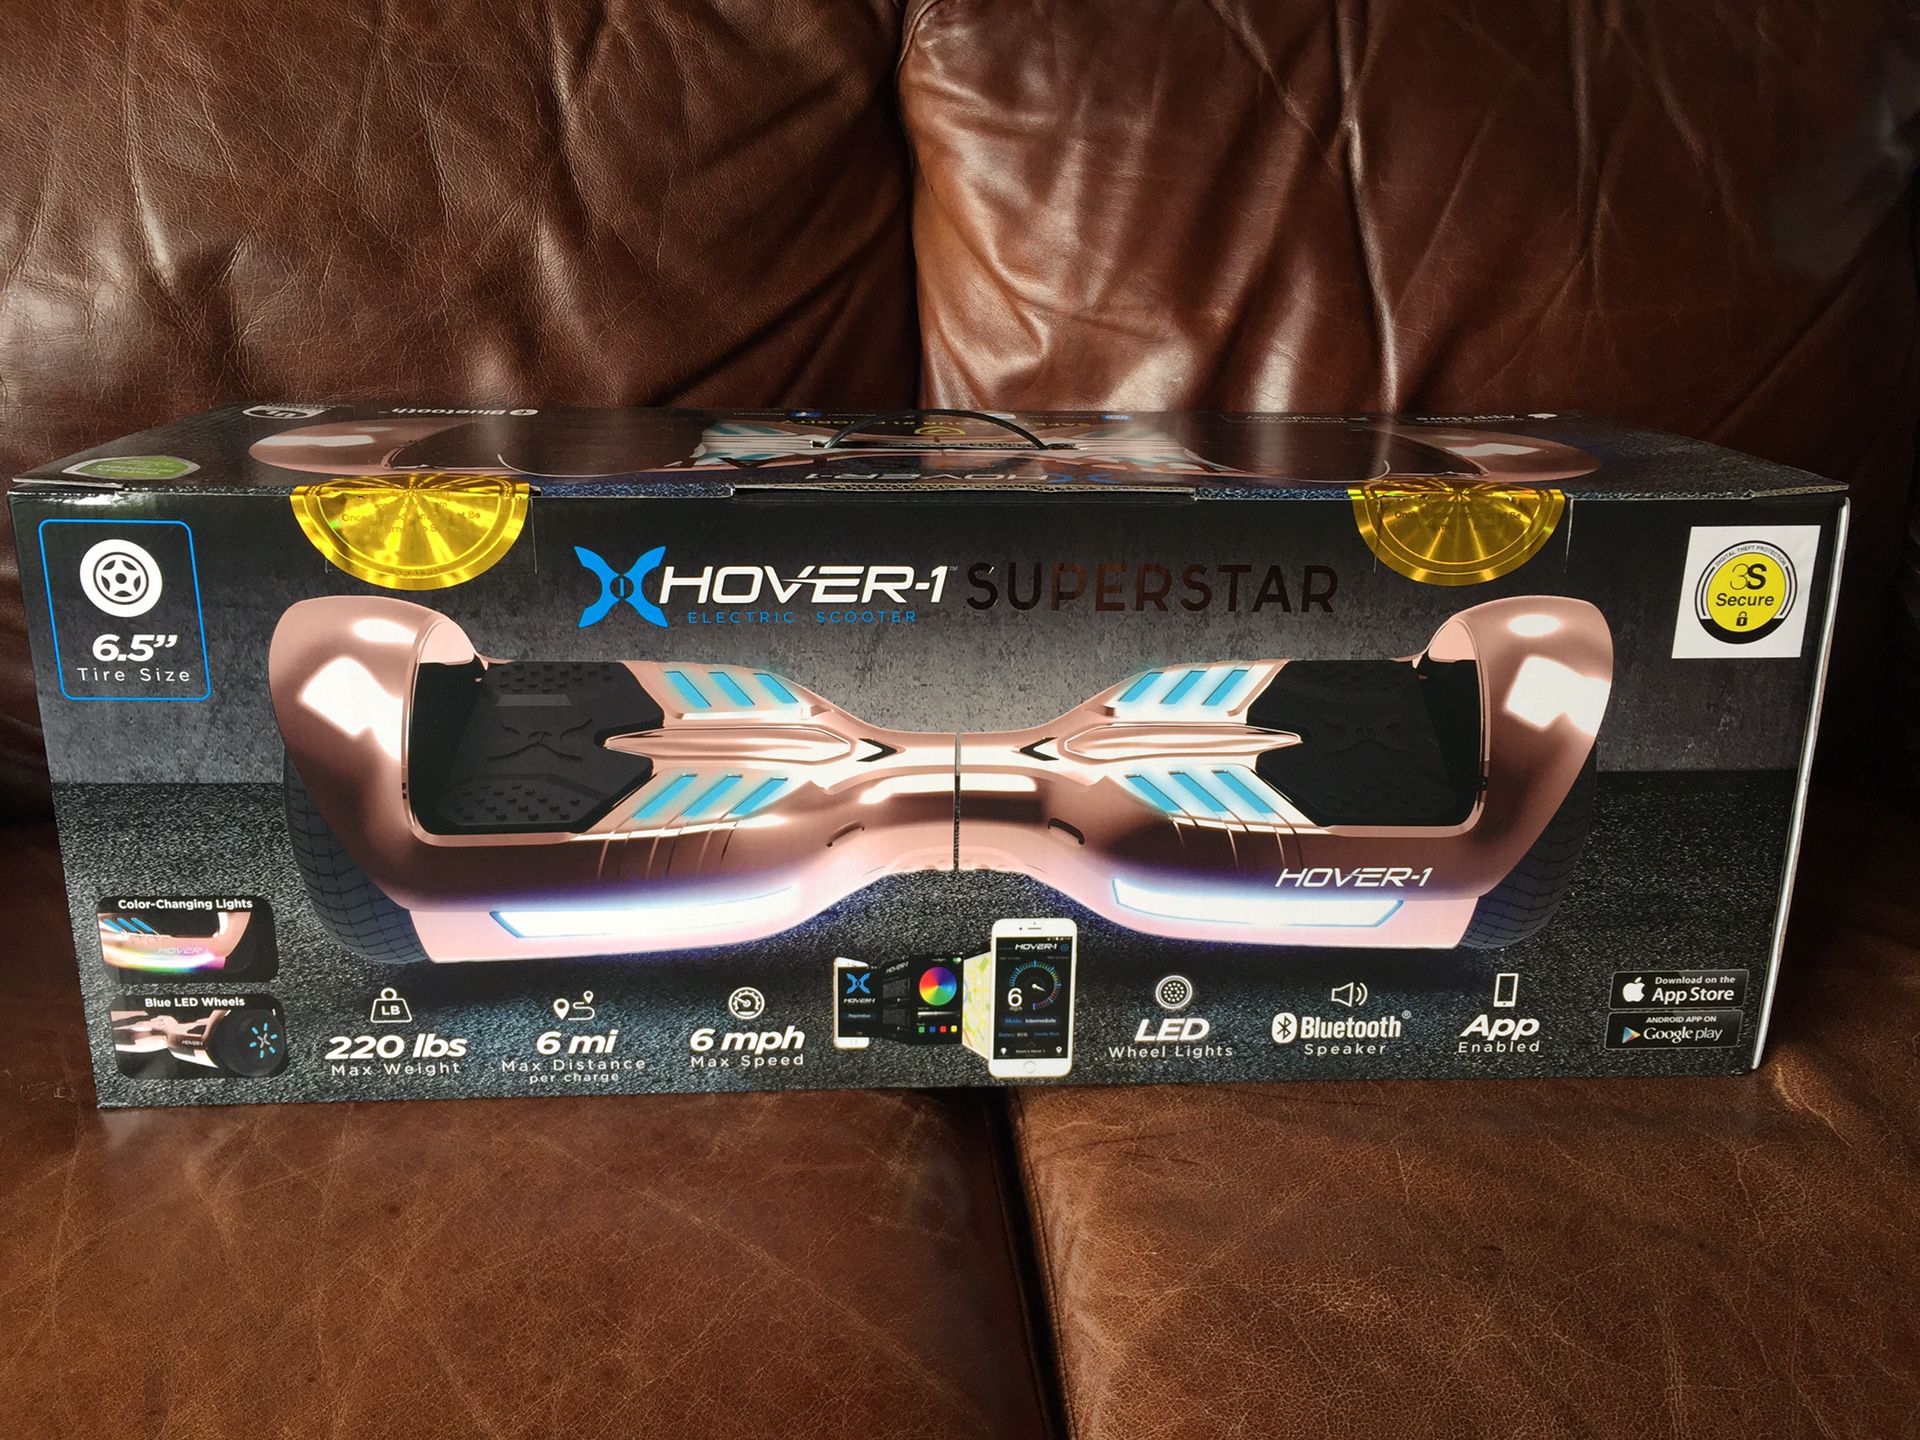 Brand New Hover-1 Superstar Hoverboard Rose Gold